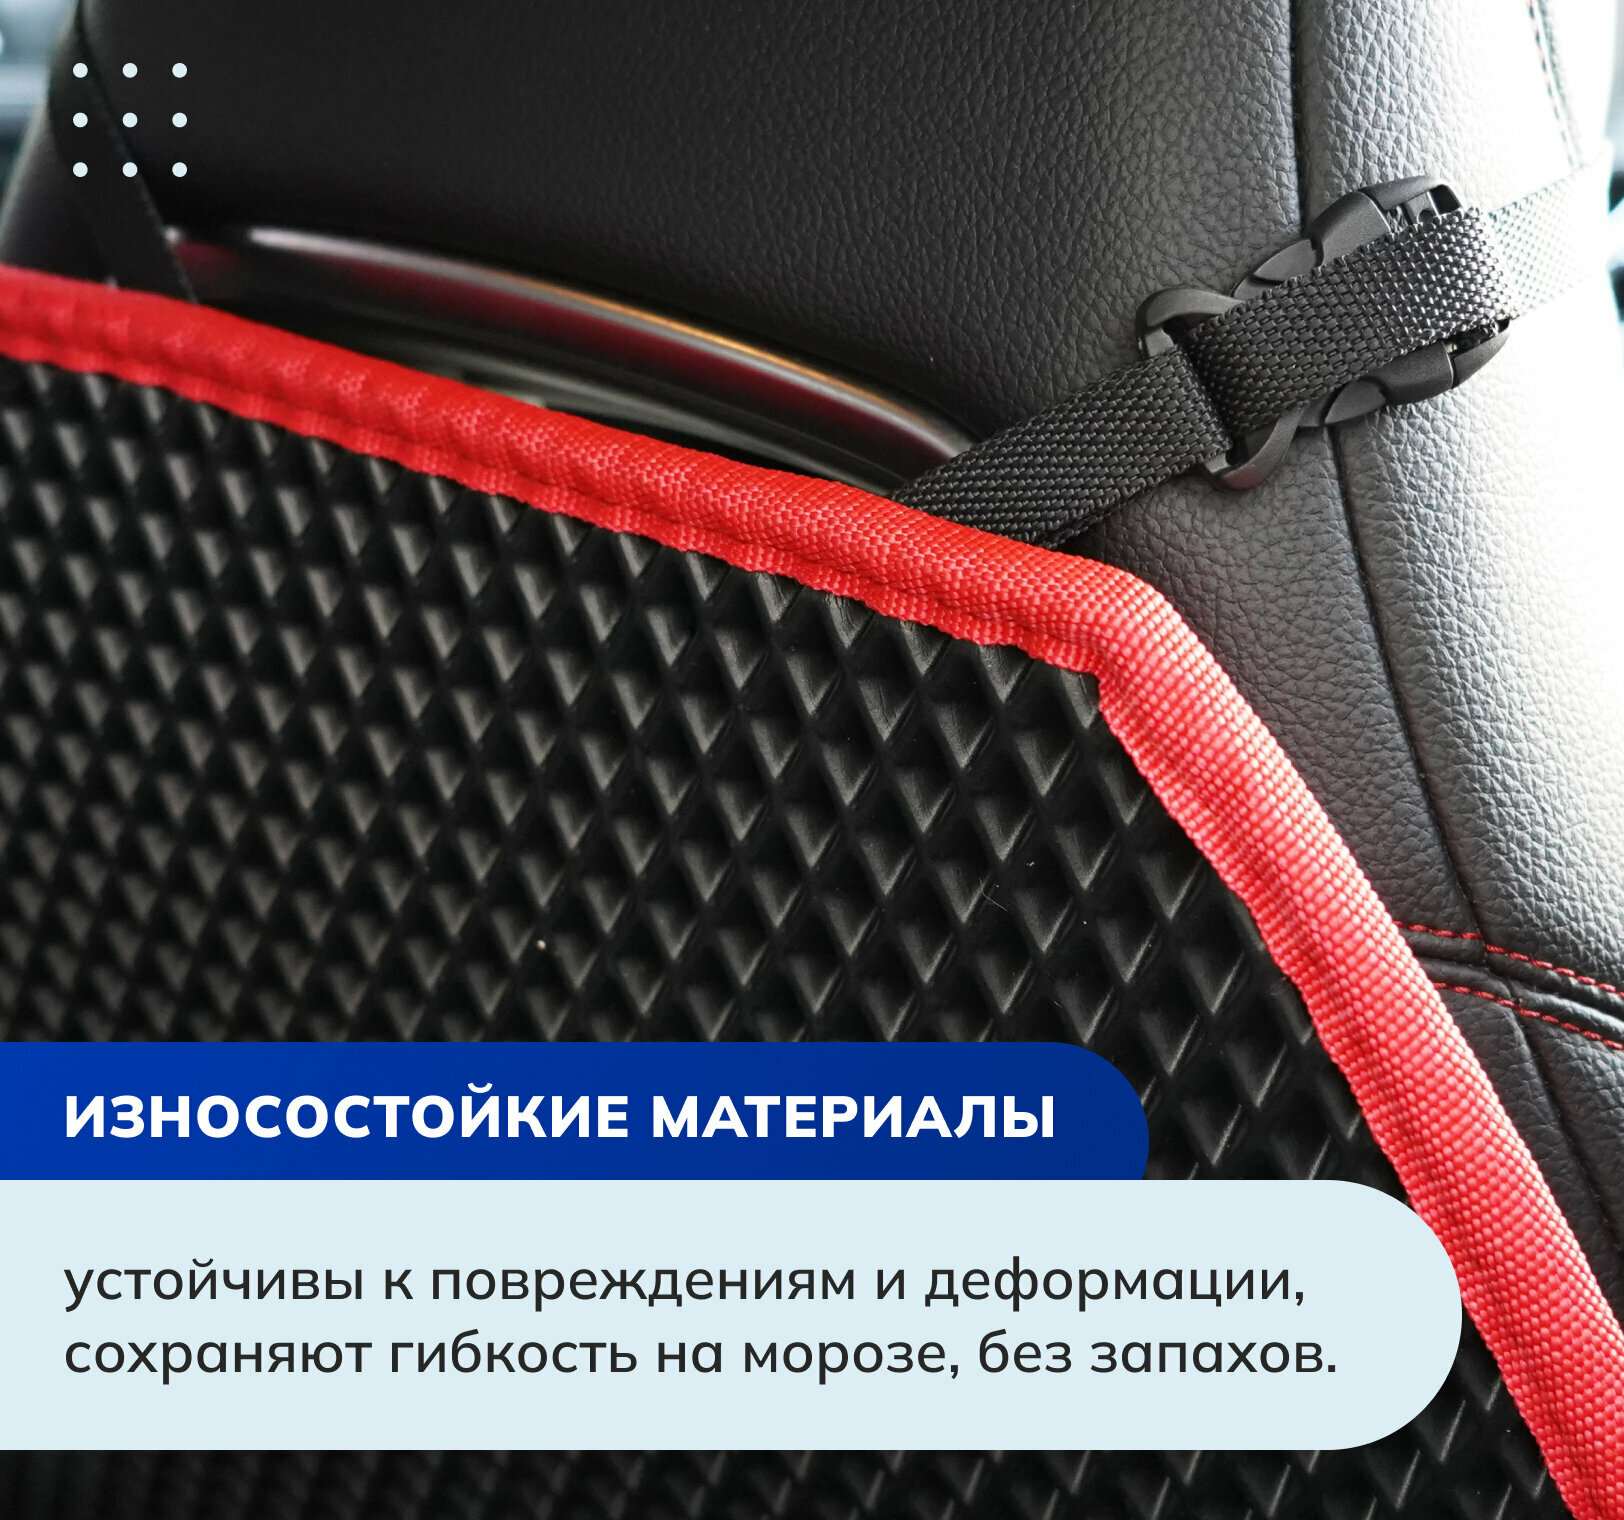 Накидка защитная на спинку переднего сидения, 70*45 см. Цвет черный ромб / серая окантовка / крепления Фастекс - PROTECT